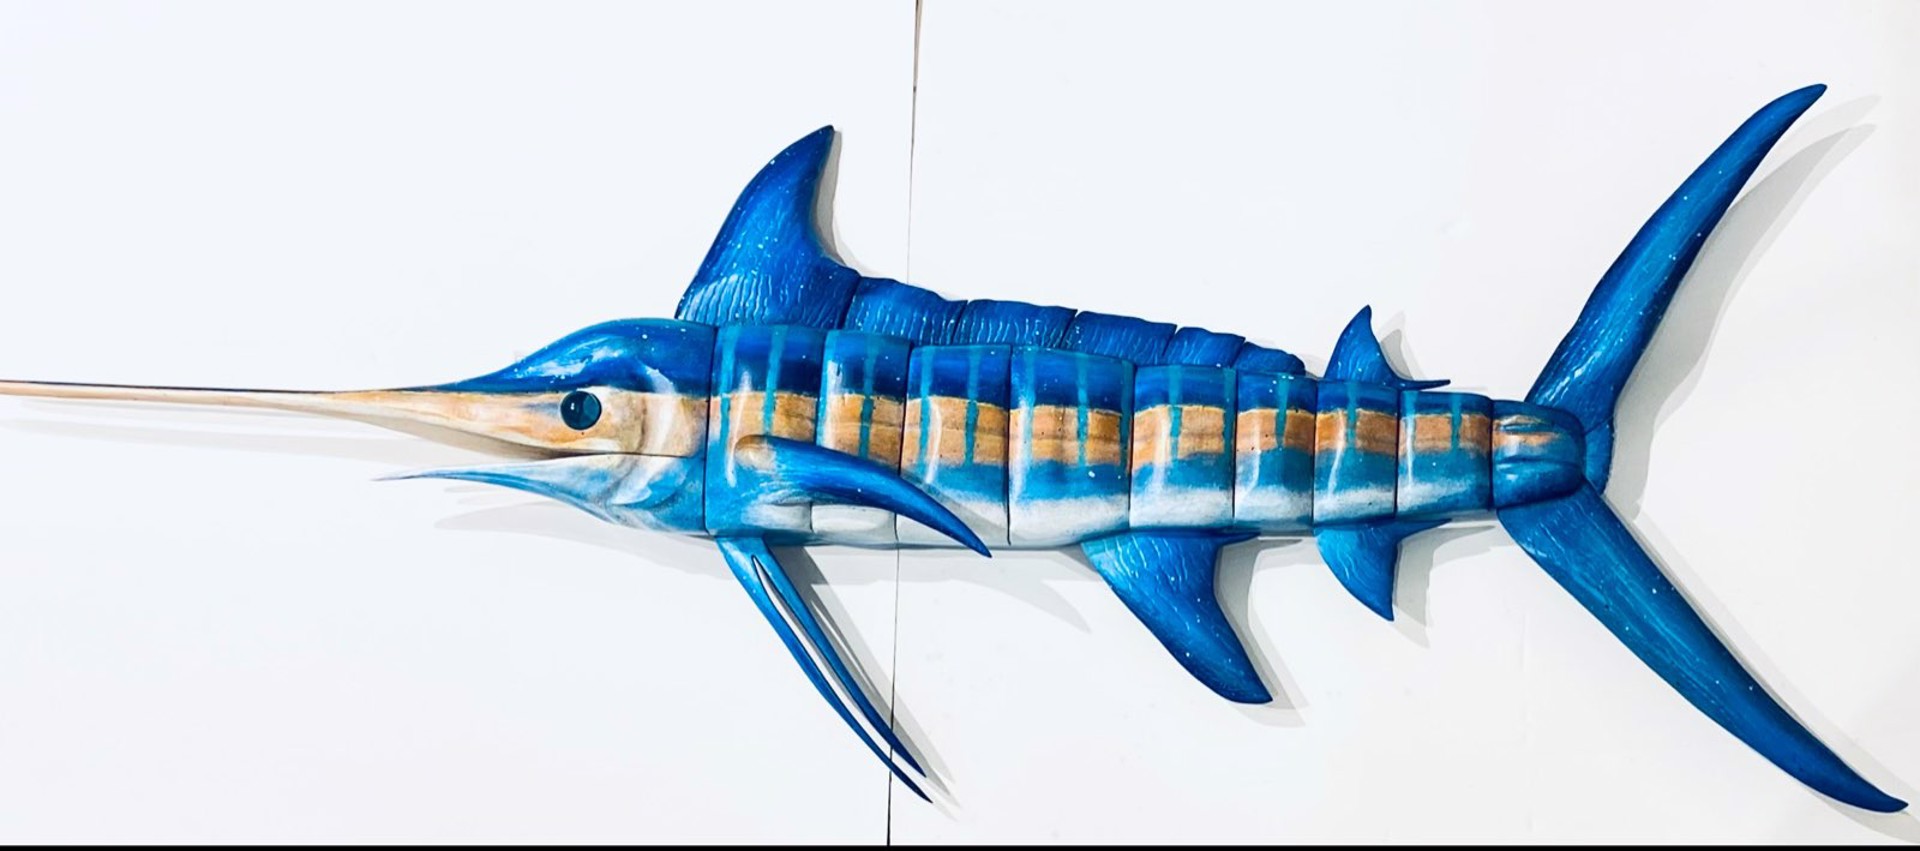 JW22-67 "Top Billing" Blue Marlin by Jo Watson